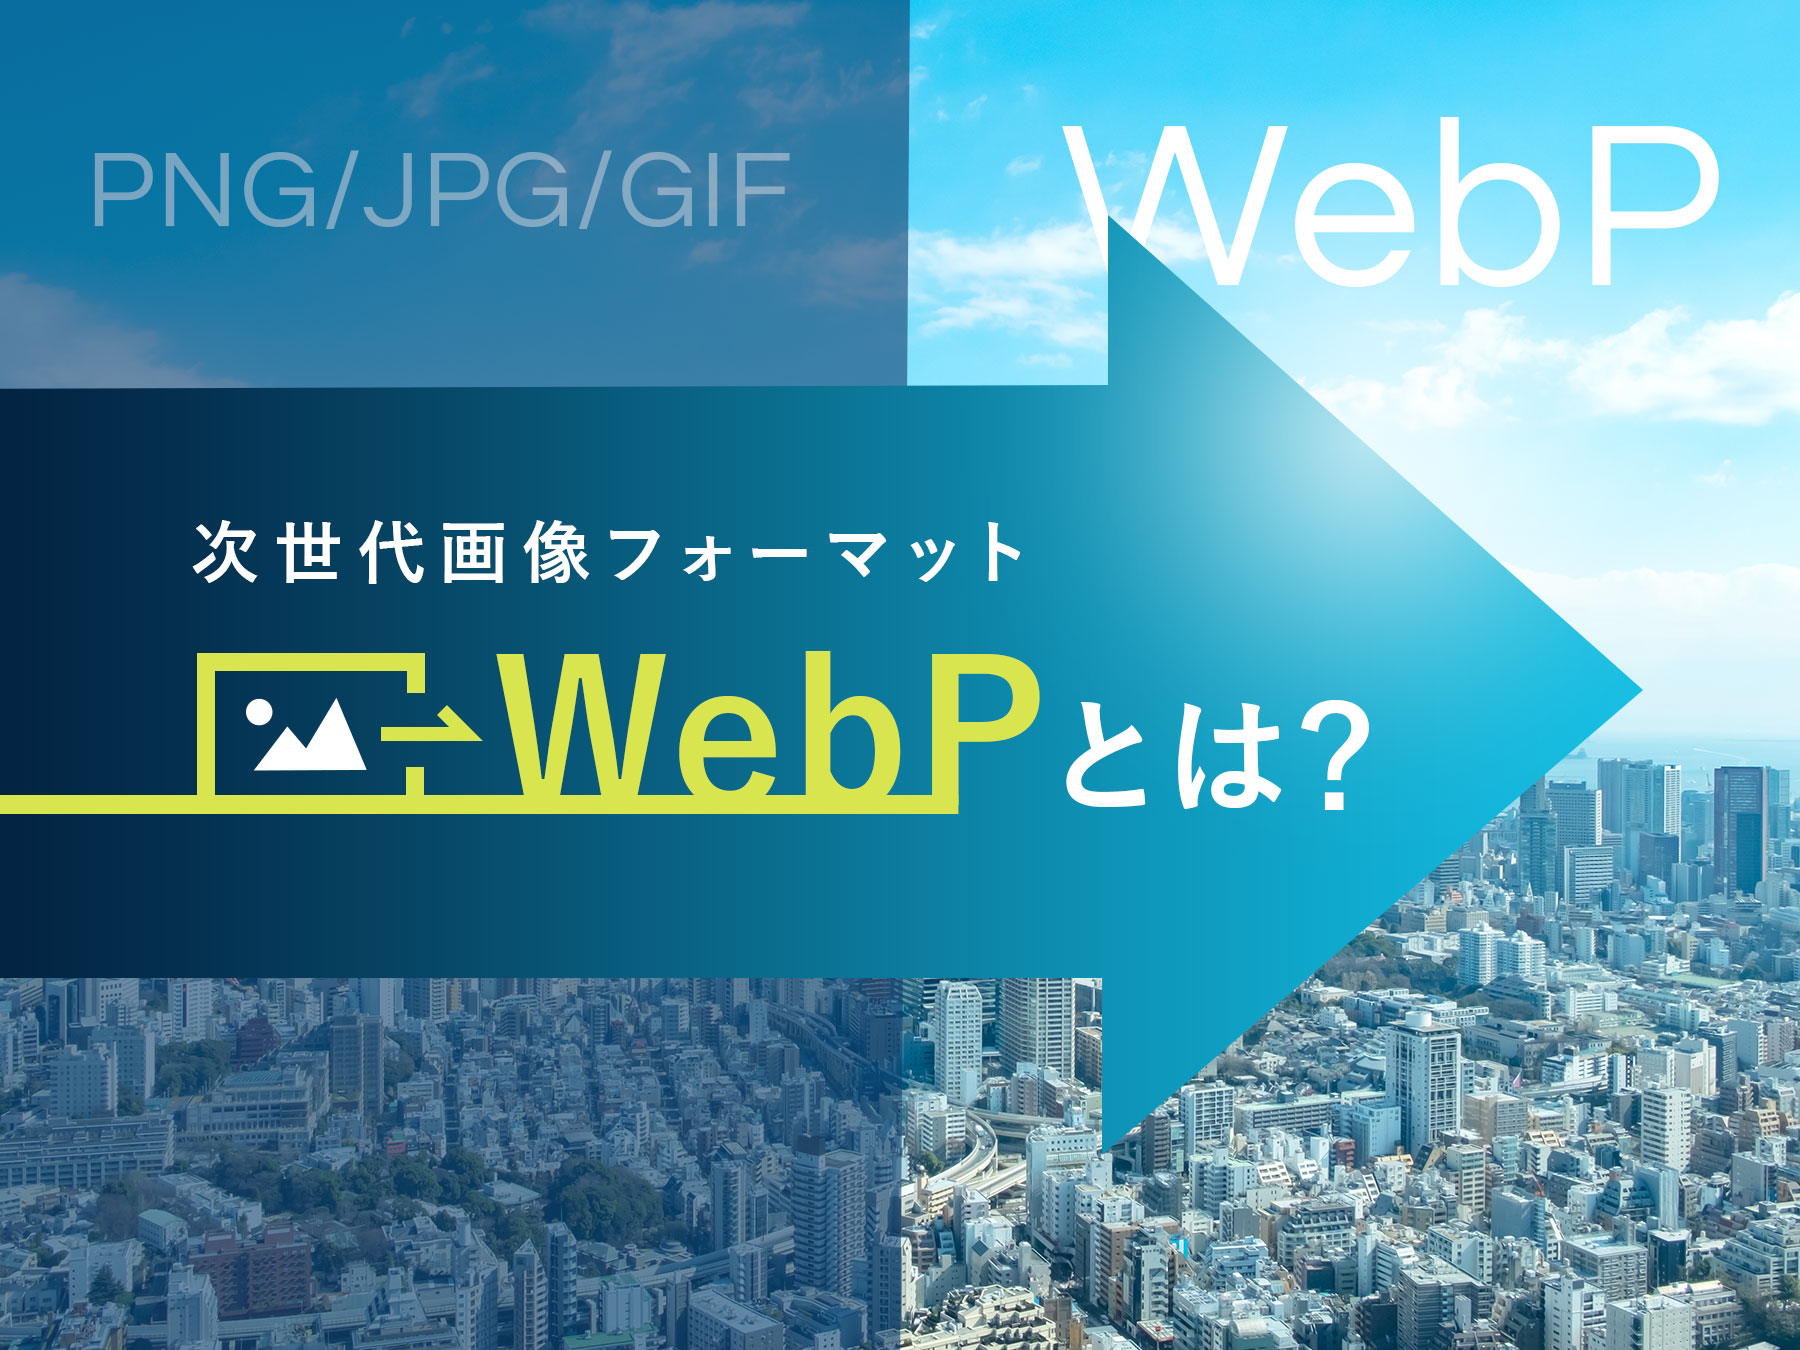 次世代画像フォーマットWebPとは？WebPの特長や変換方法などをご紹介